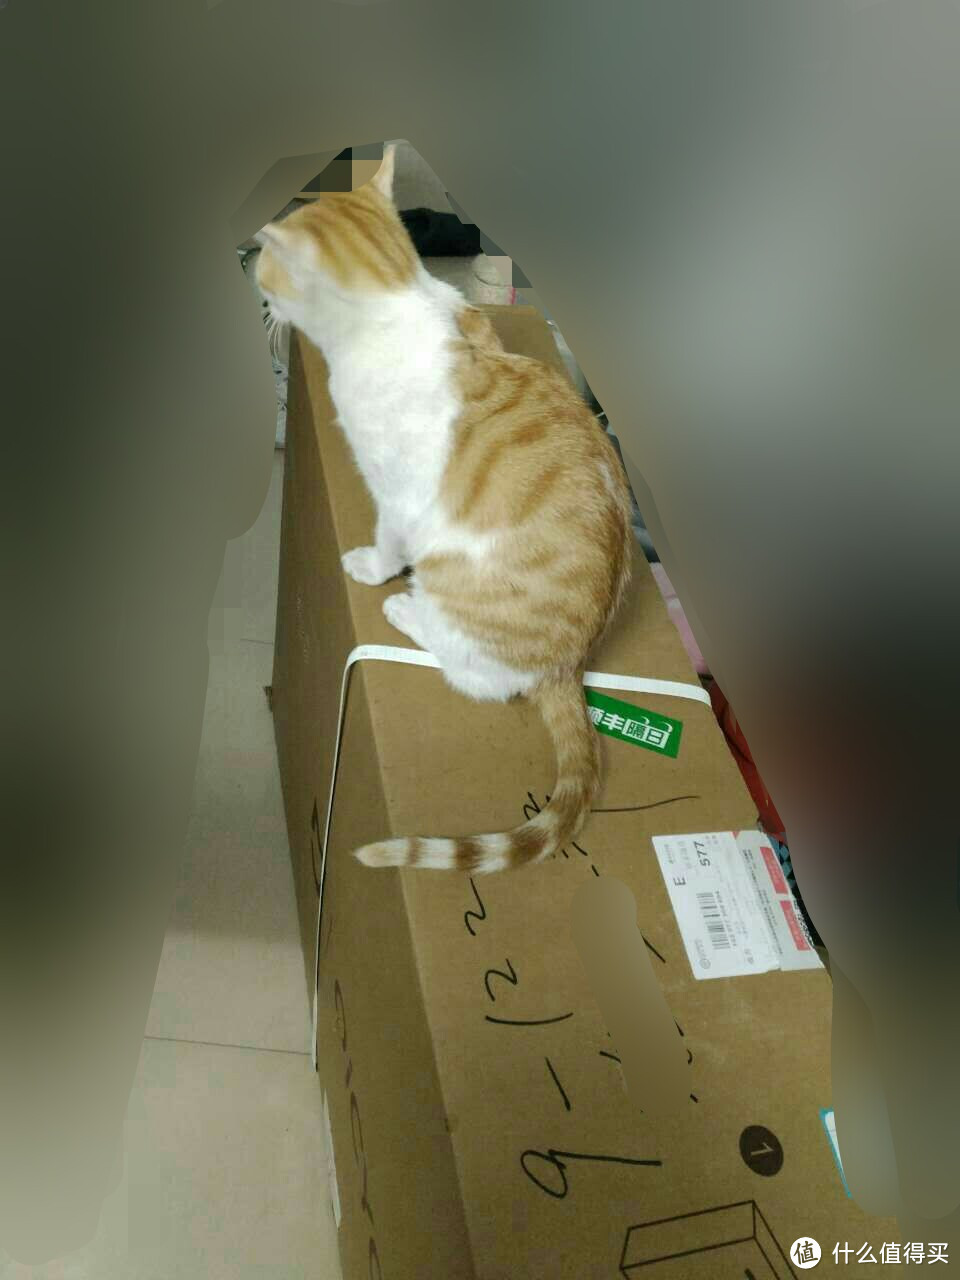 纸箱对傻猫有着致命的吸引力